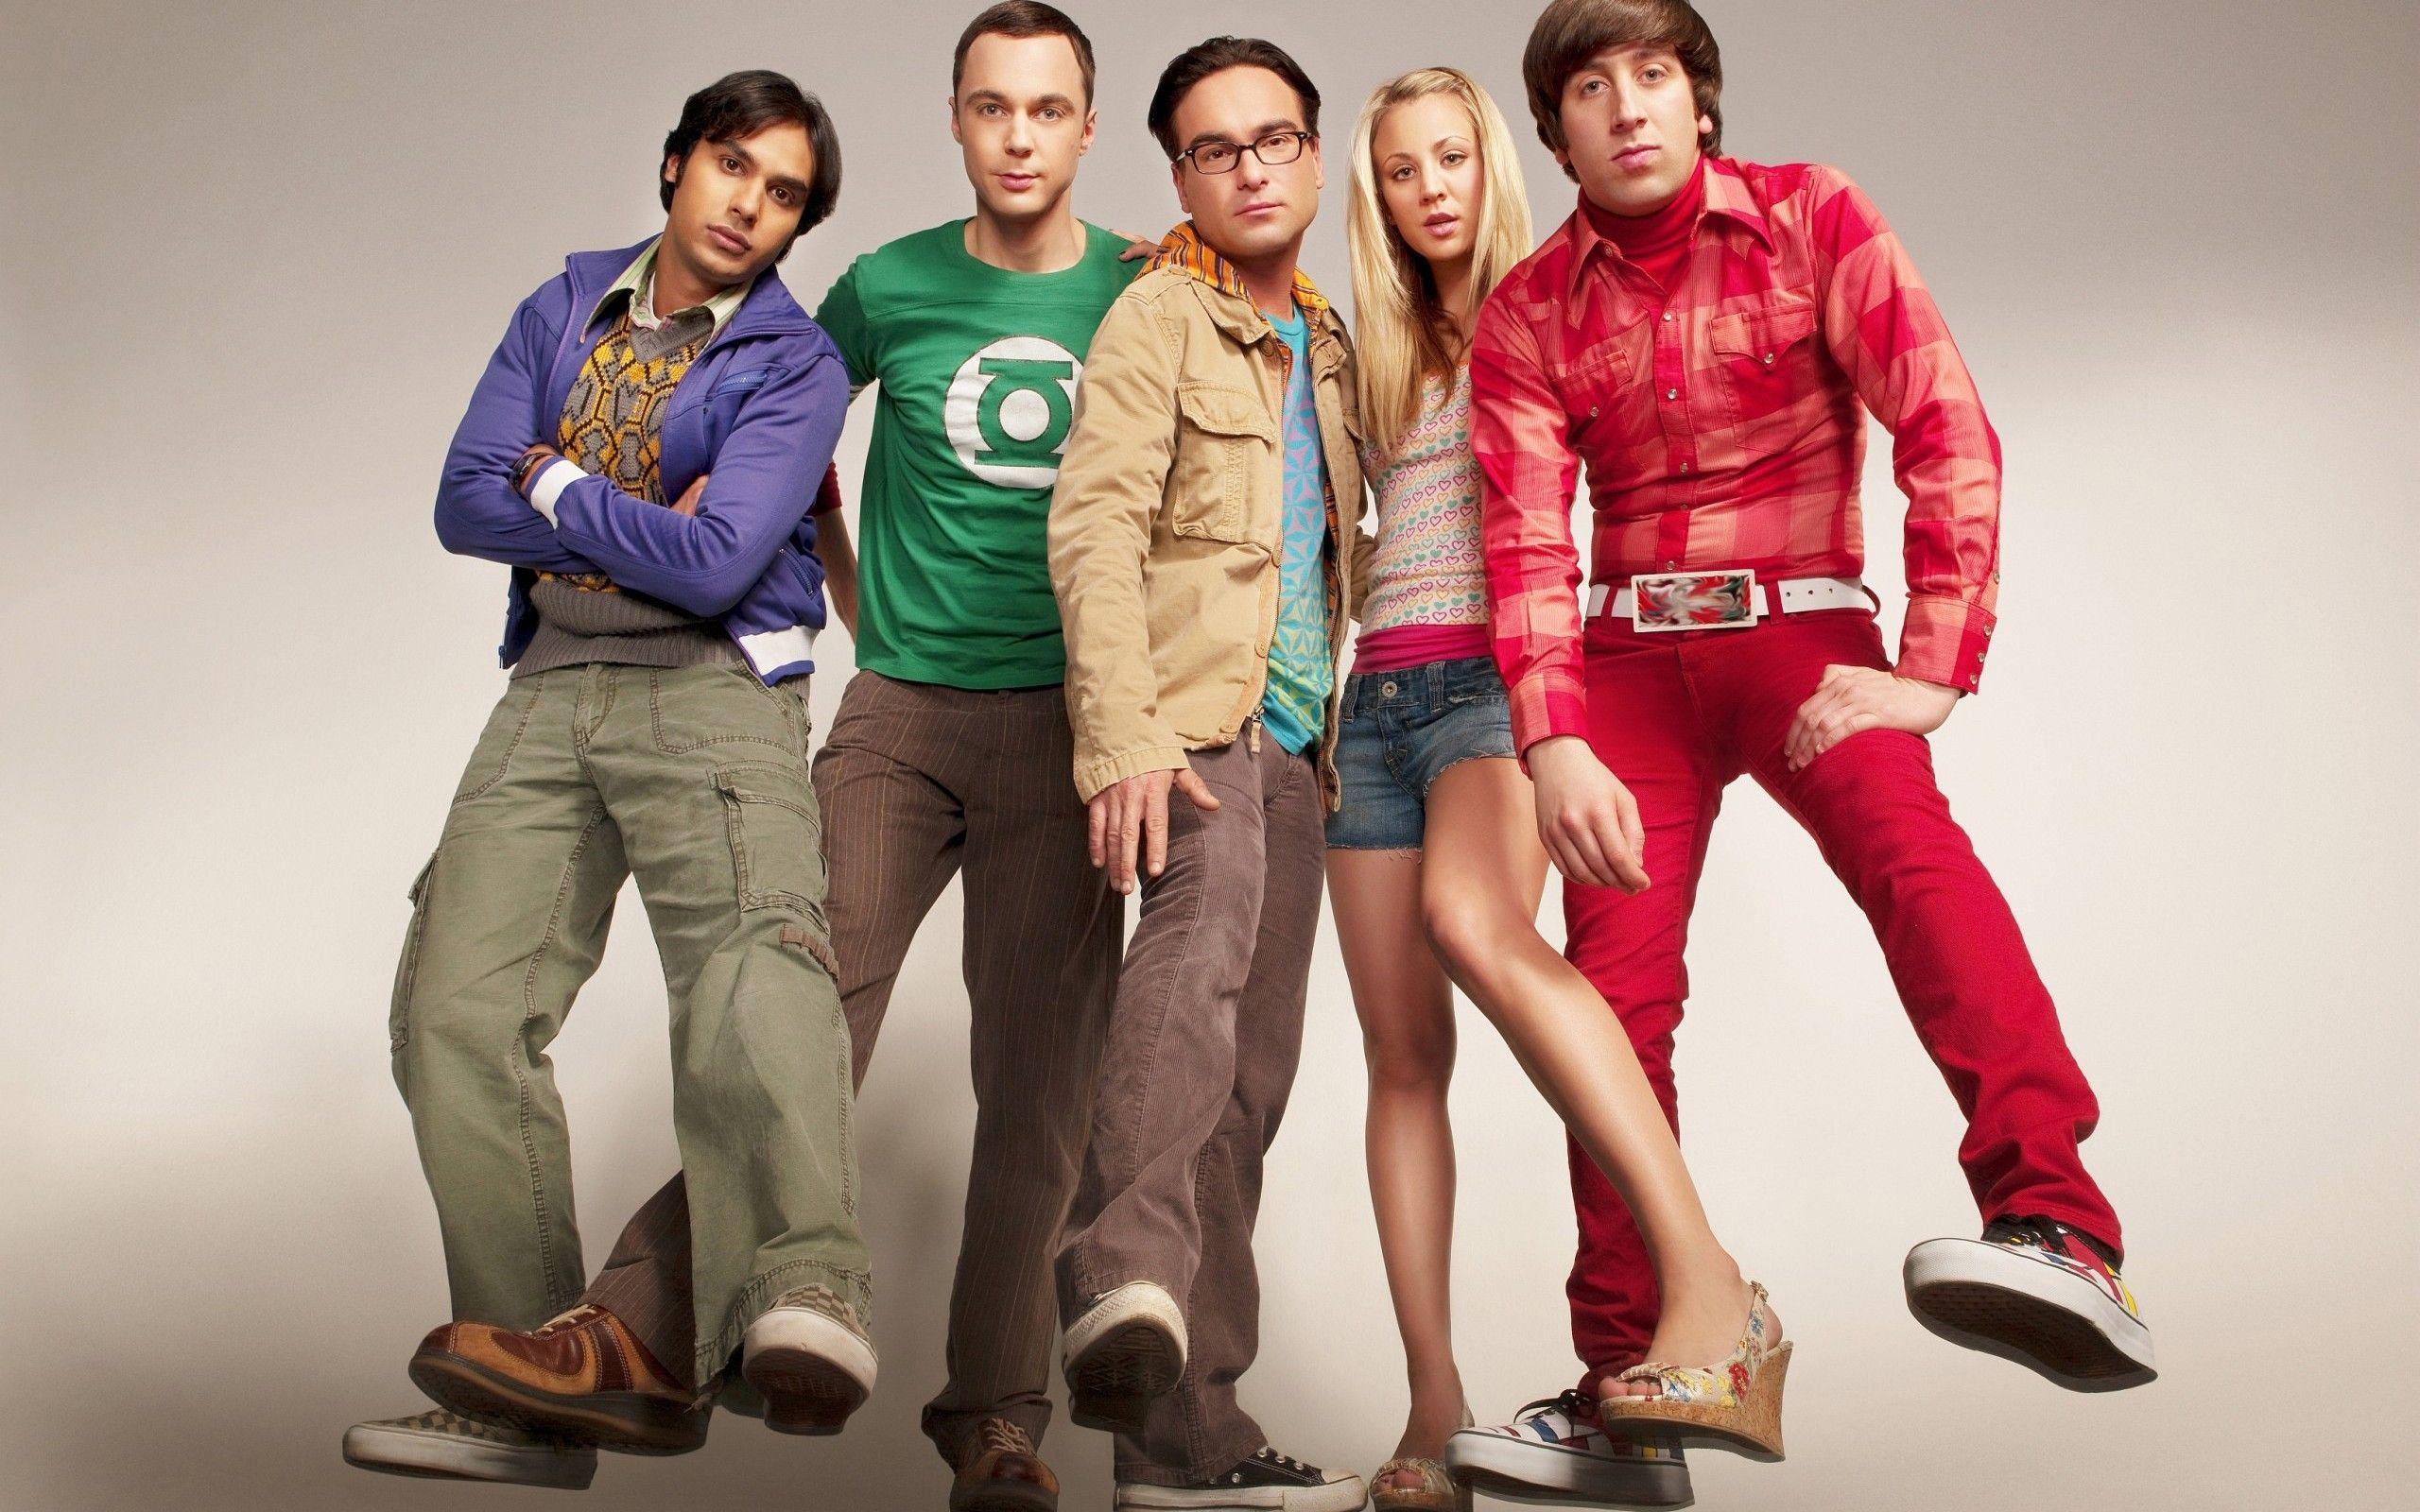 Free Cast of Big Bang Theory Wallpaper, Free Cast of Big Bang